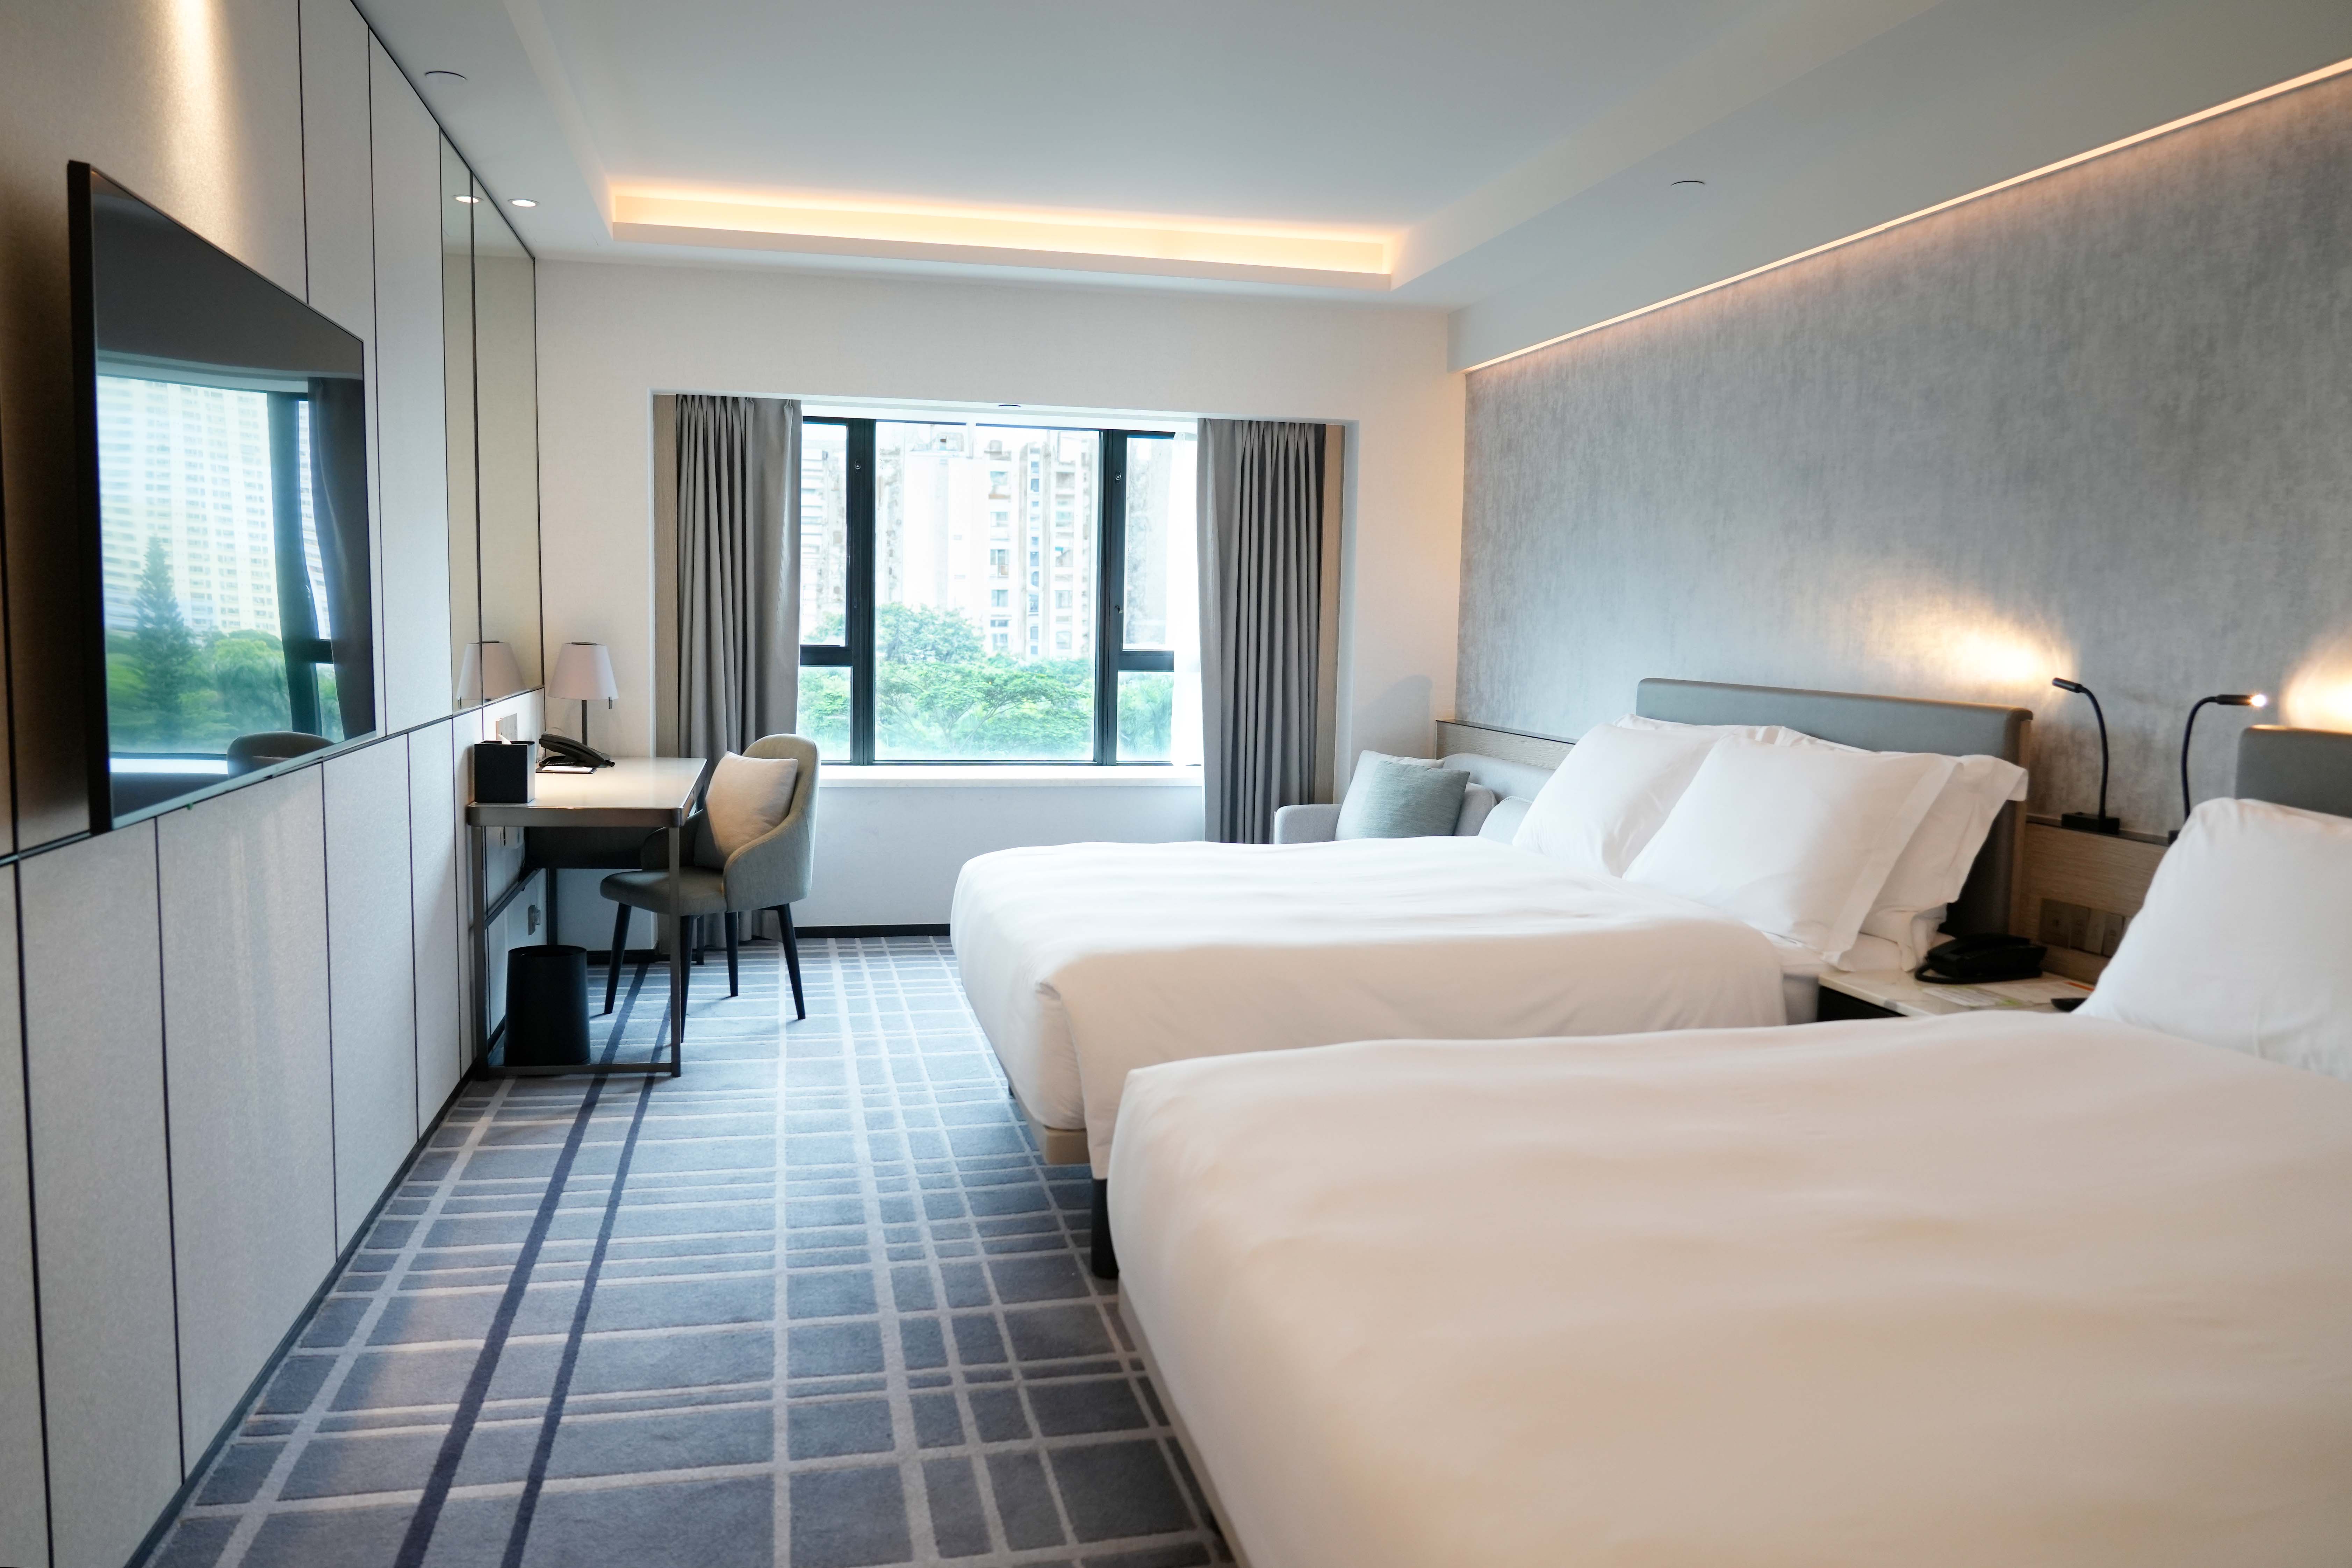 香港宾馆床头图片